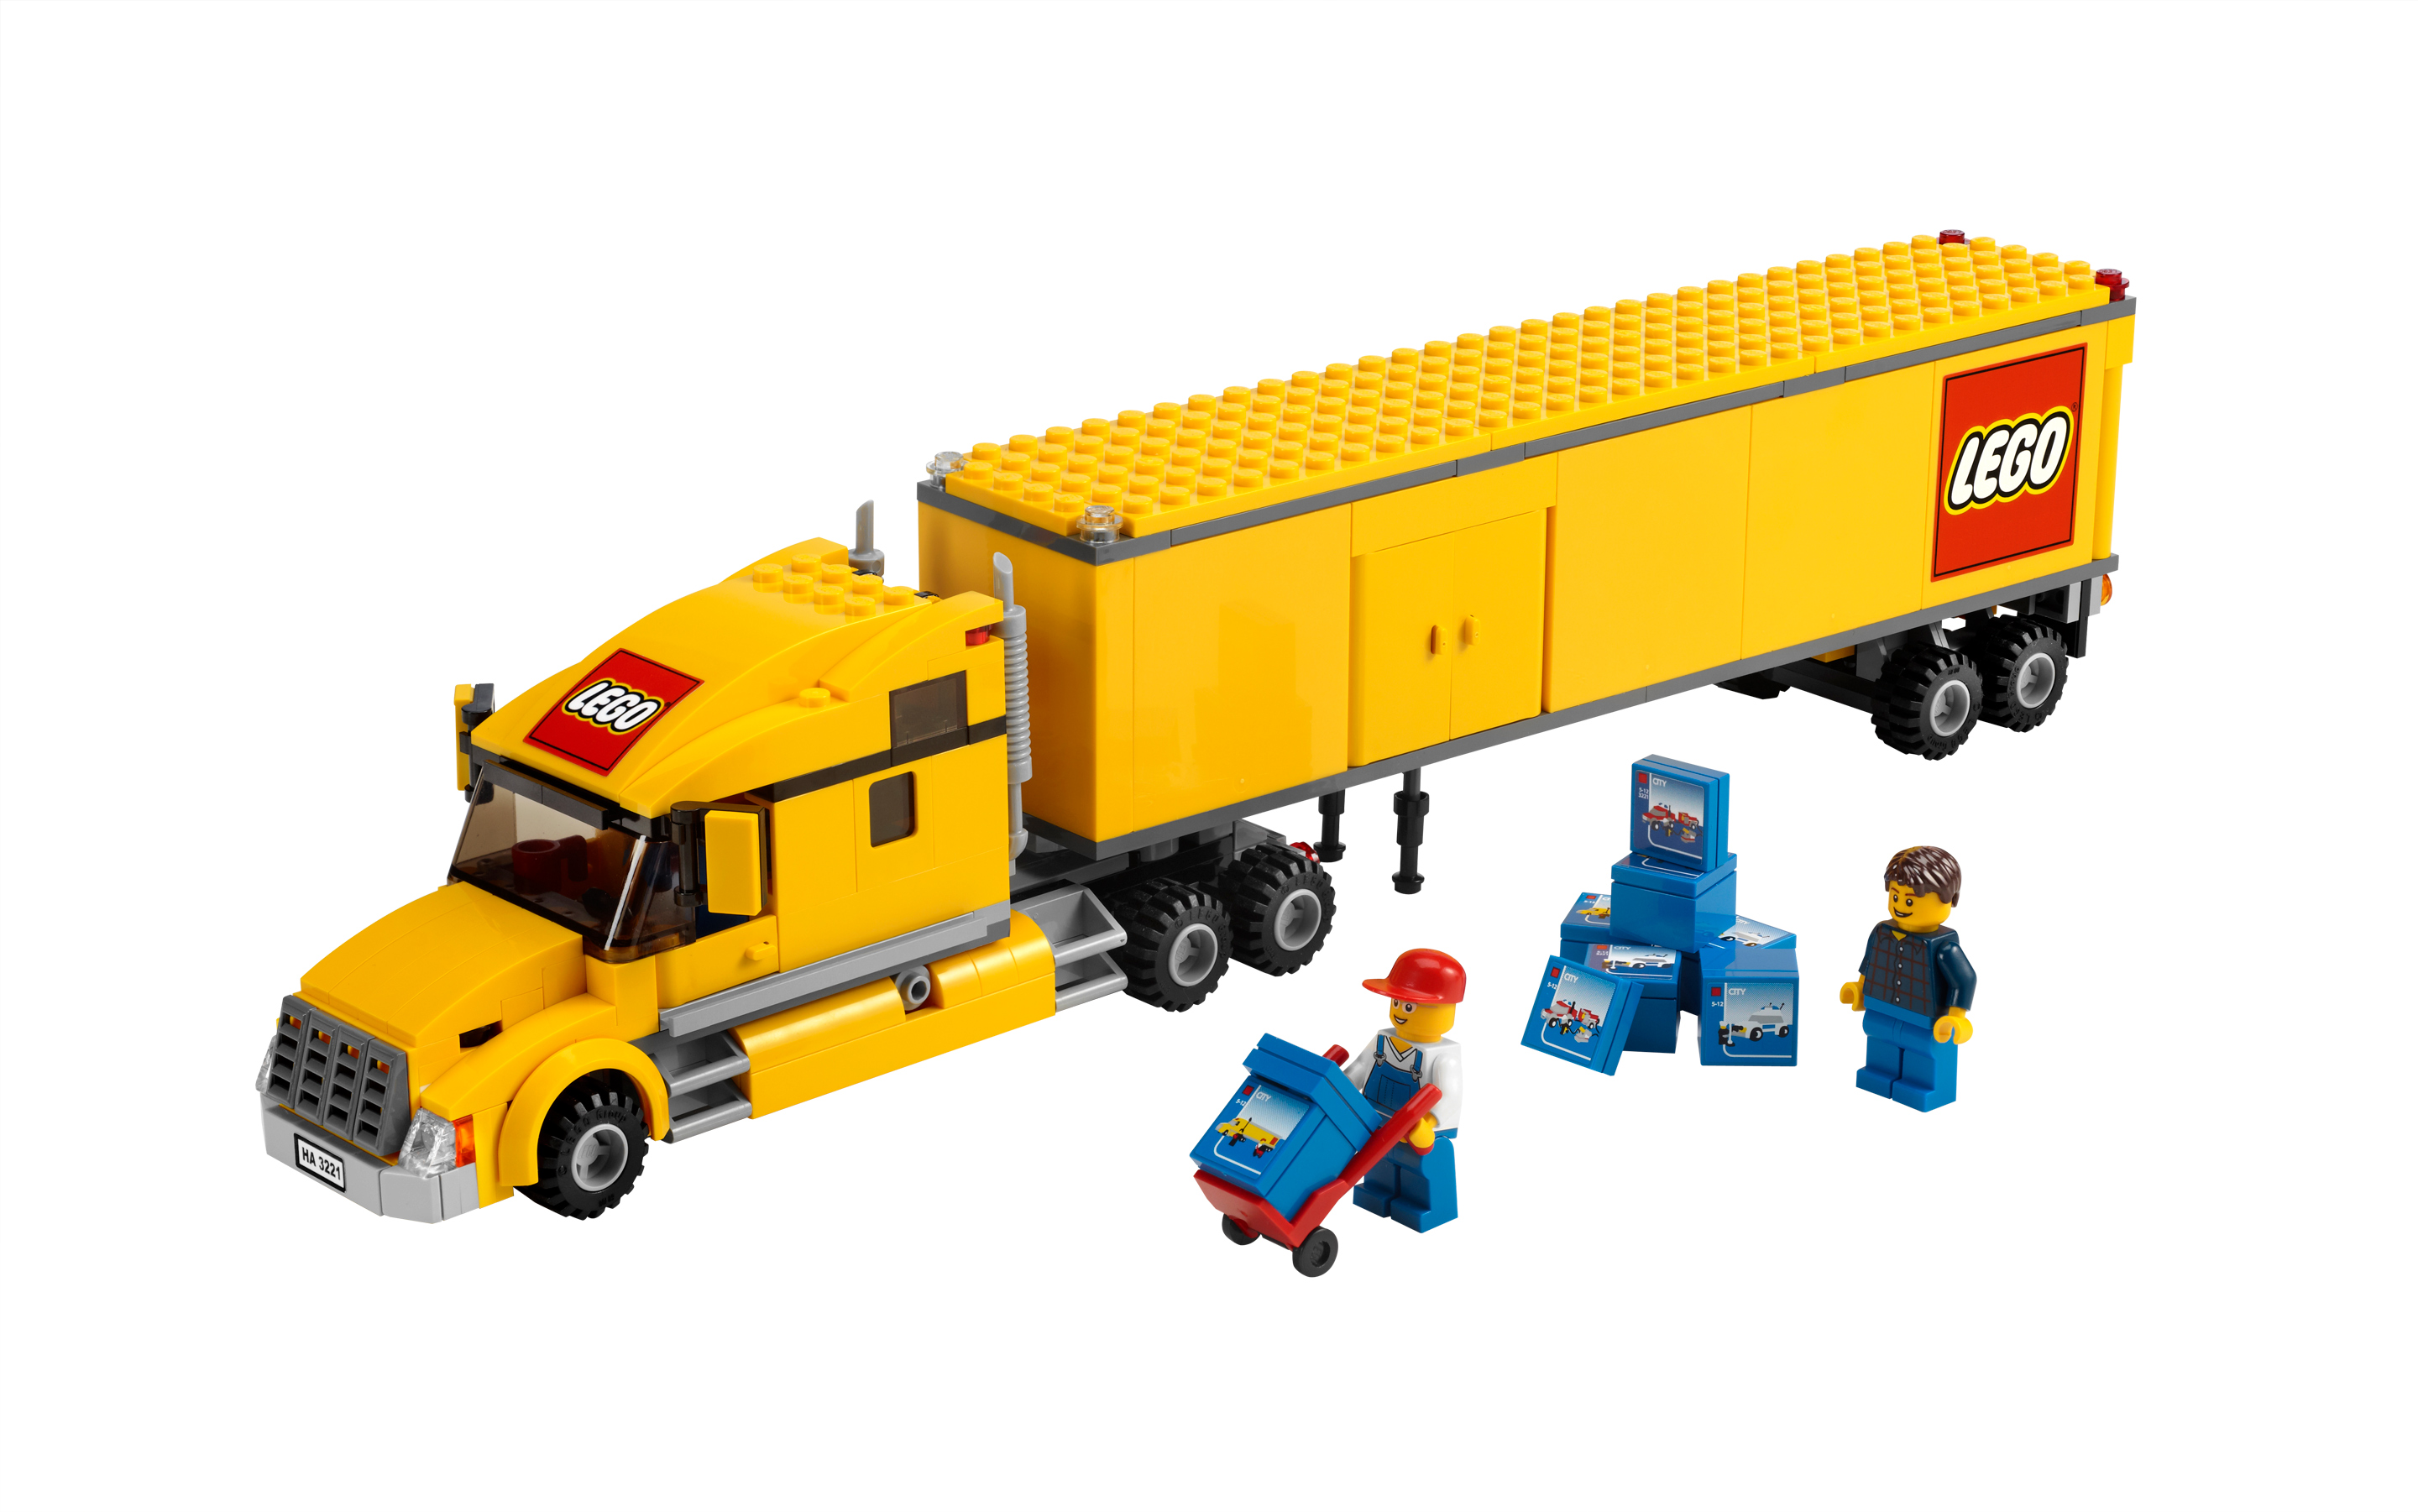 gebraucht mit Bauplan LEGO 3221 1 ohne Verpackung LKW Sattelzug 